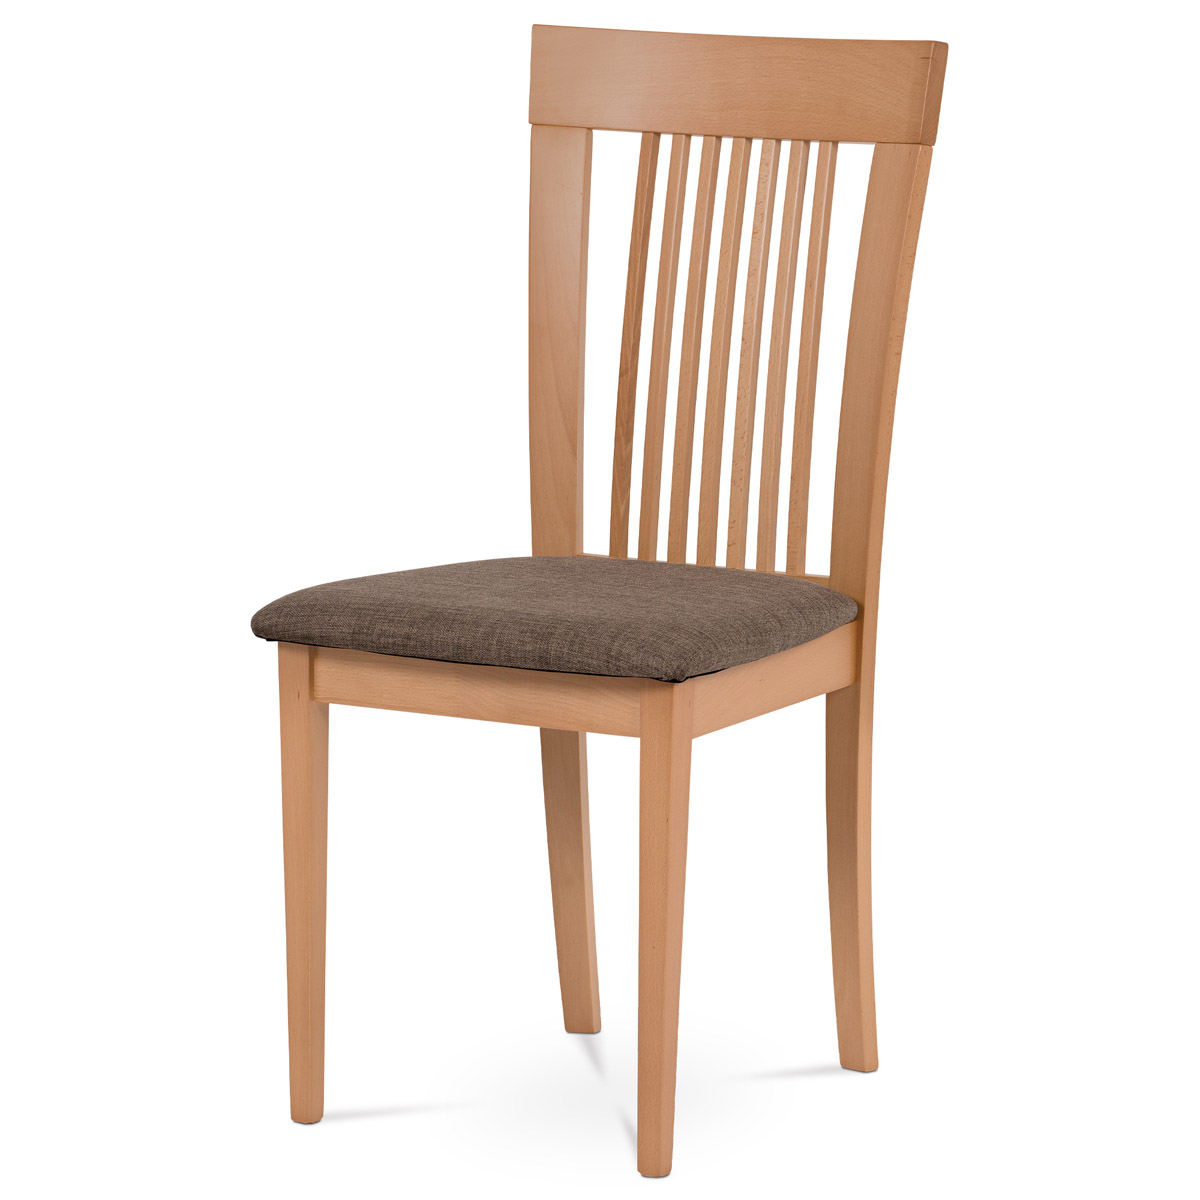 Jídelní židle, masiv buk, barva buk, látkový hnědý potah